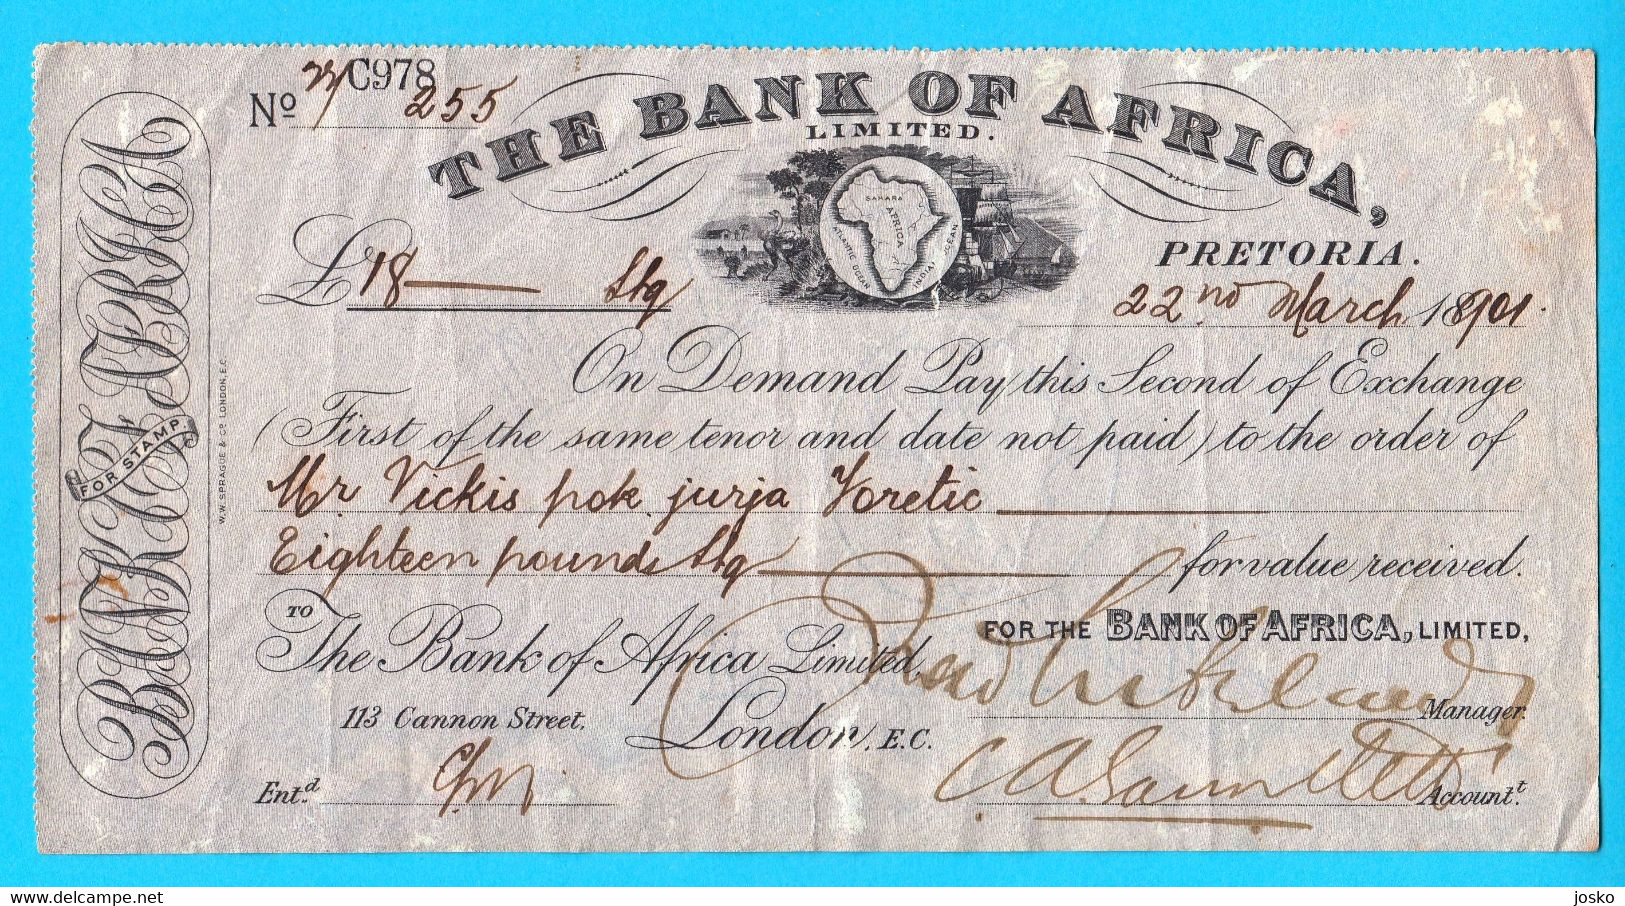 THE BANK OF AFRICA LIMITED - Pretoria 1901 Original Old Bill Of Exchange * South Africa Bond Check RRR - Afrique Du Sud